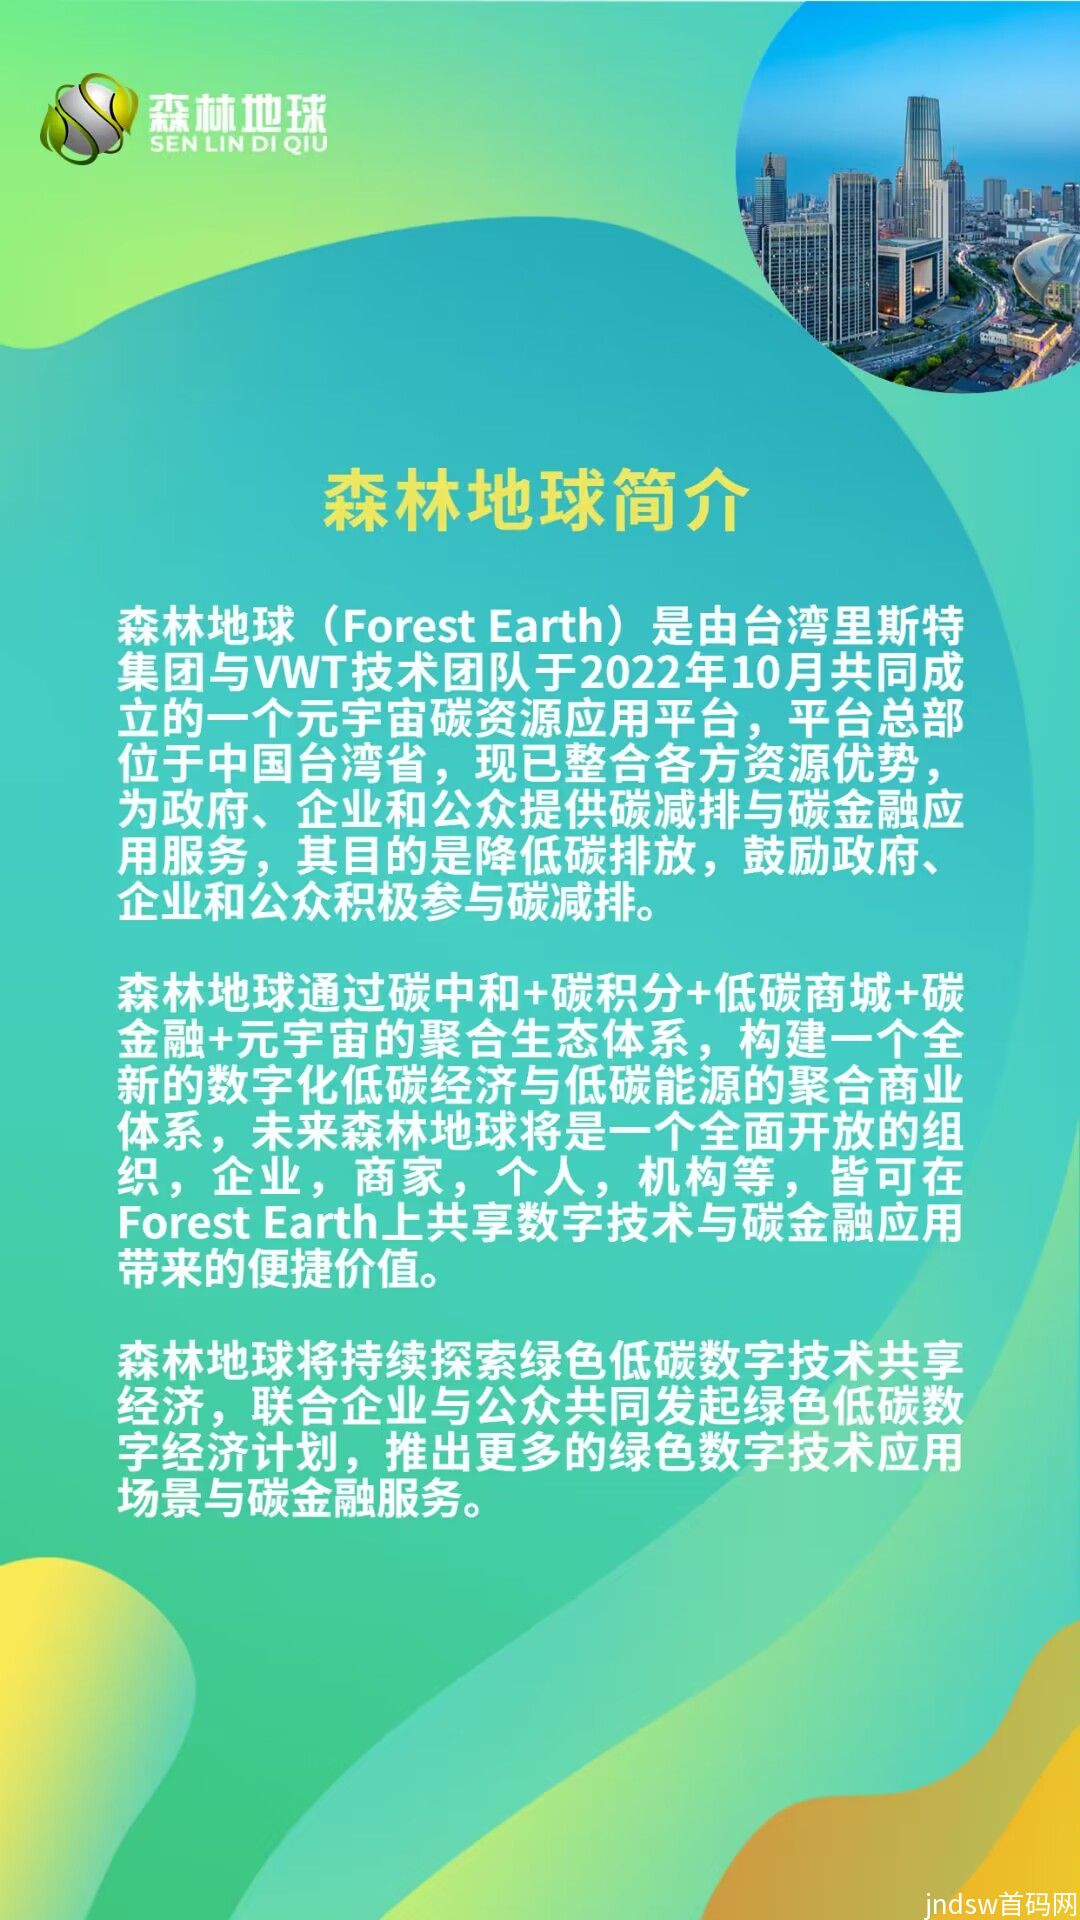 首码预热 森林地球 全新卷轴模式 招募首码市场部_9